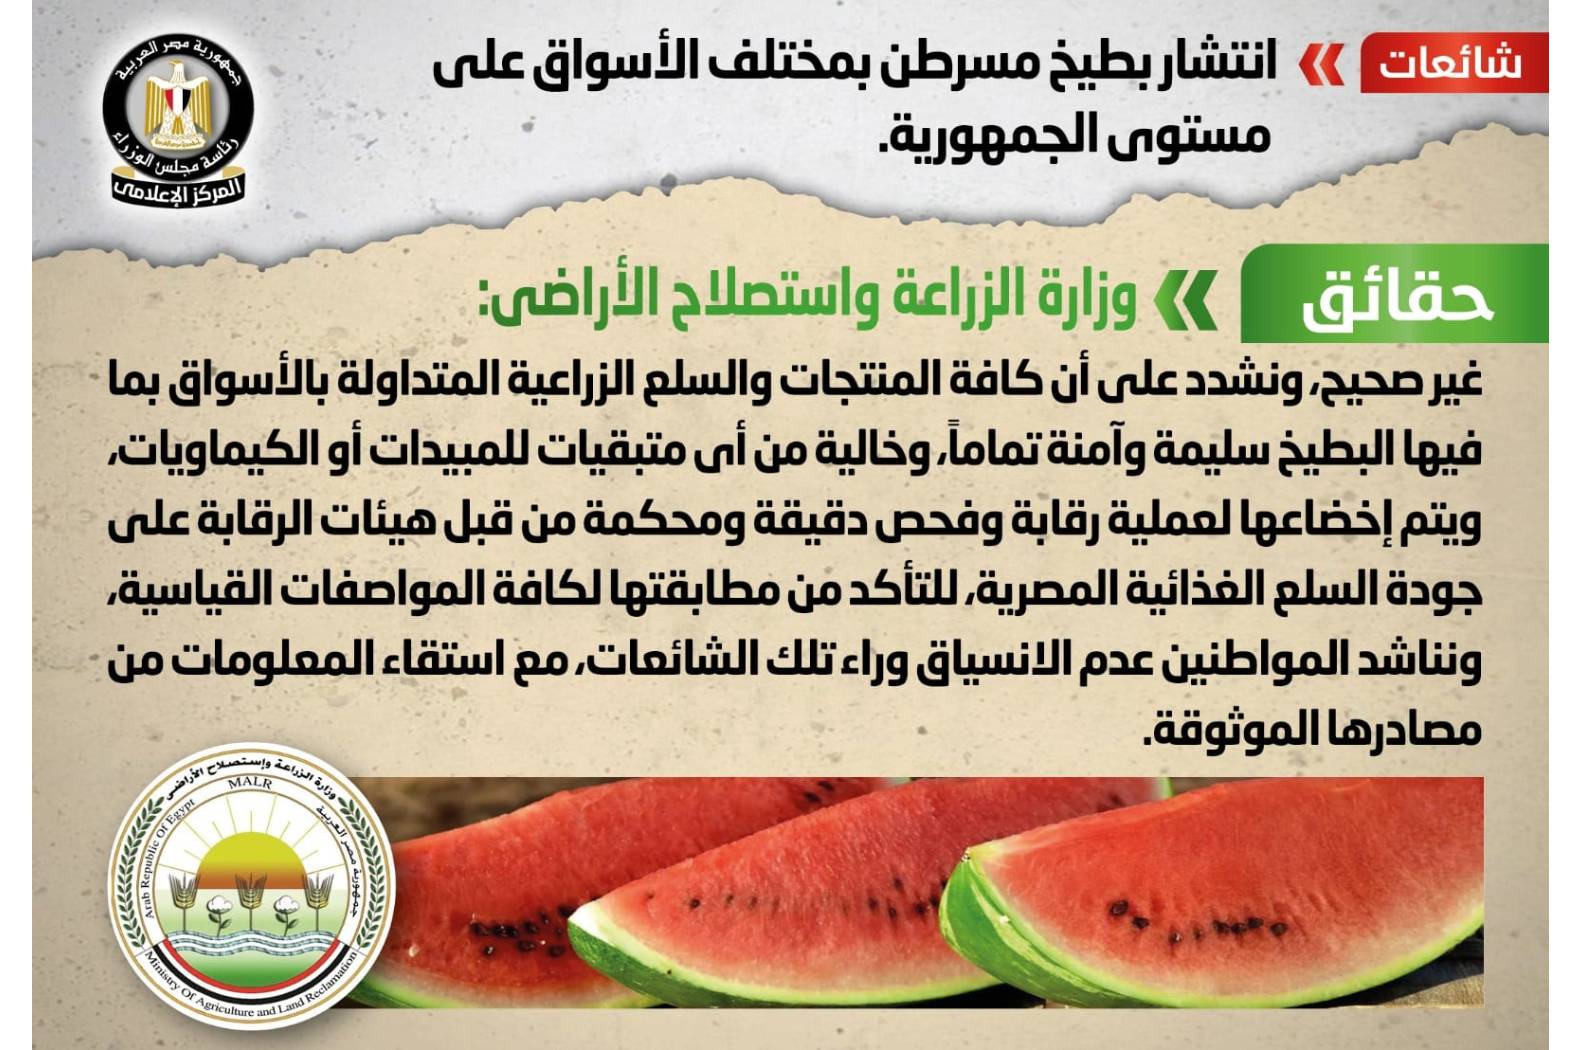 كافة المنتجات والسلع الزراعية المتداولة بالأسواق بما فيها البطيخ سليمة وآمنة تماماً